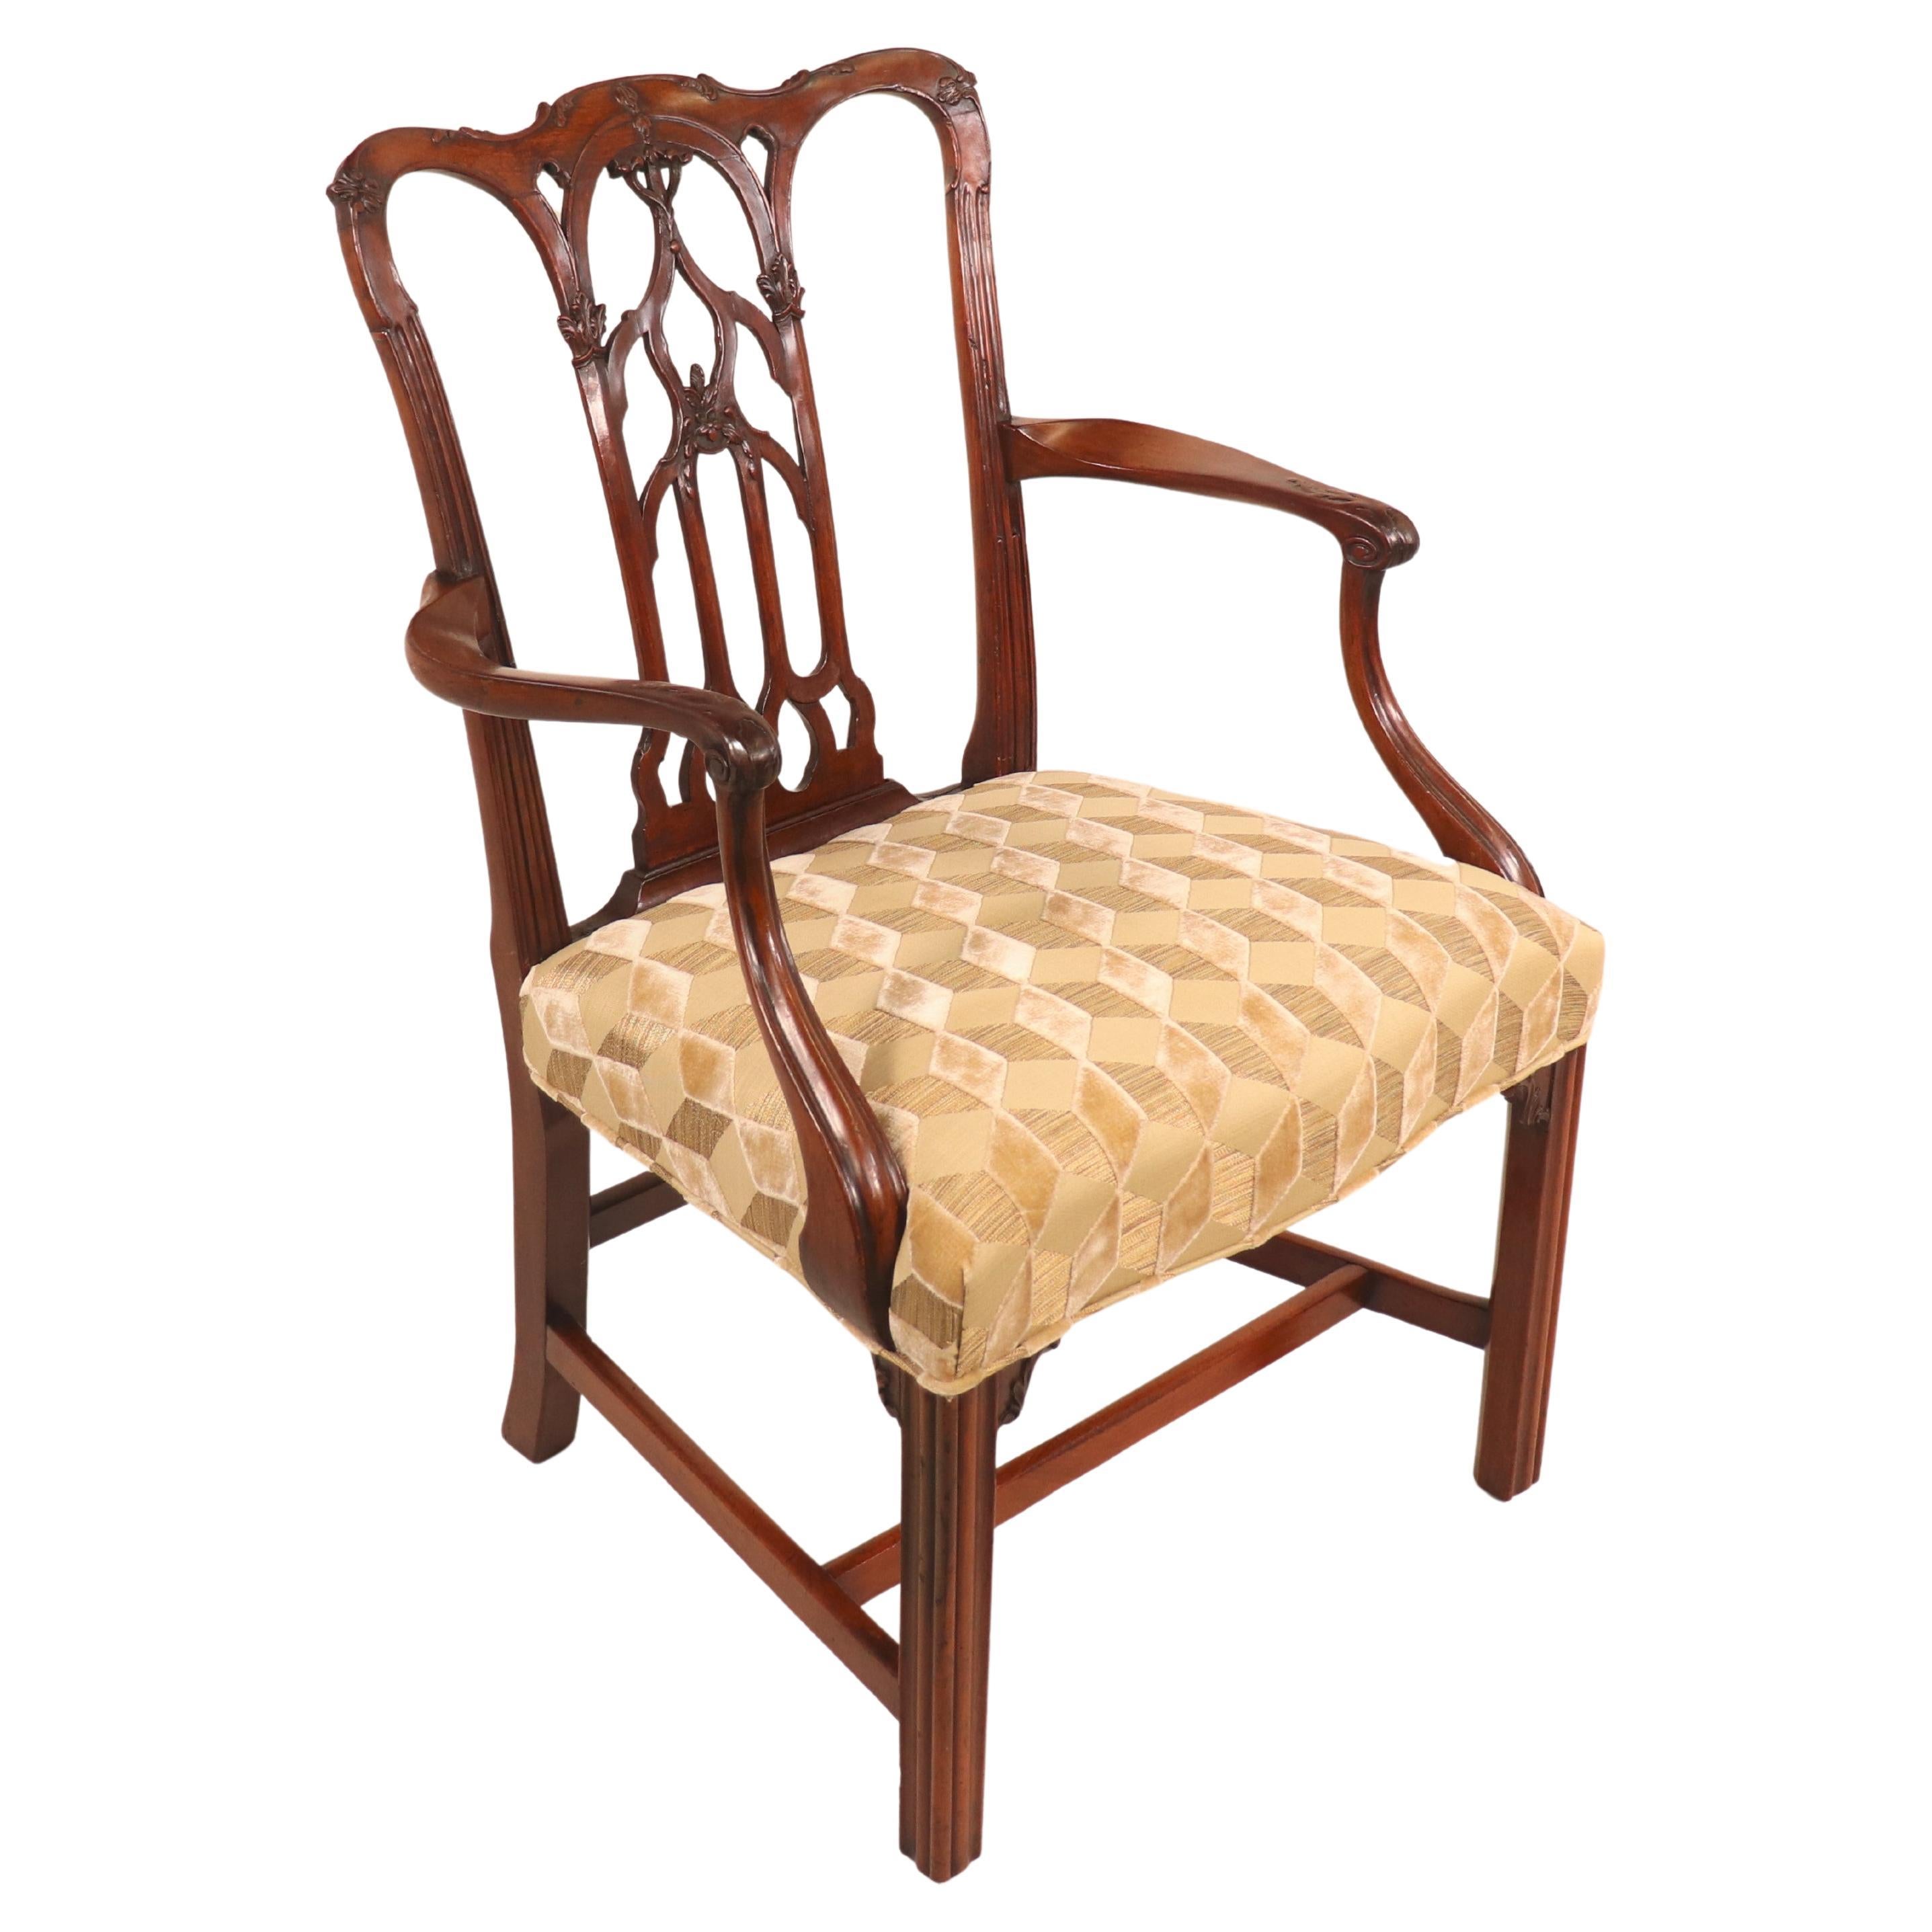 Circa 1750, fauteuil anglais d'époque géorgienne II en acajou avec tissu moderne